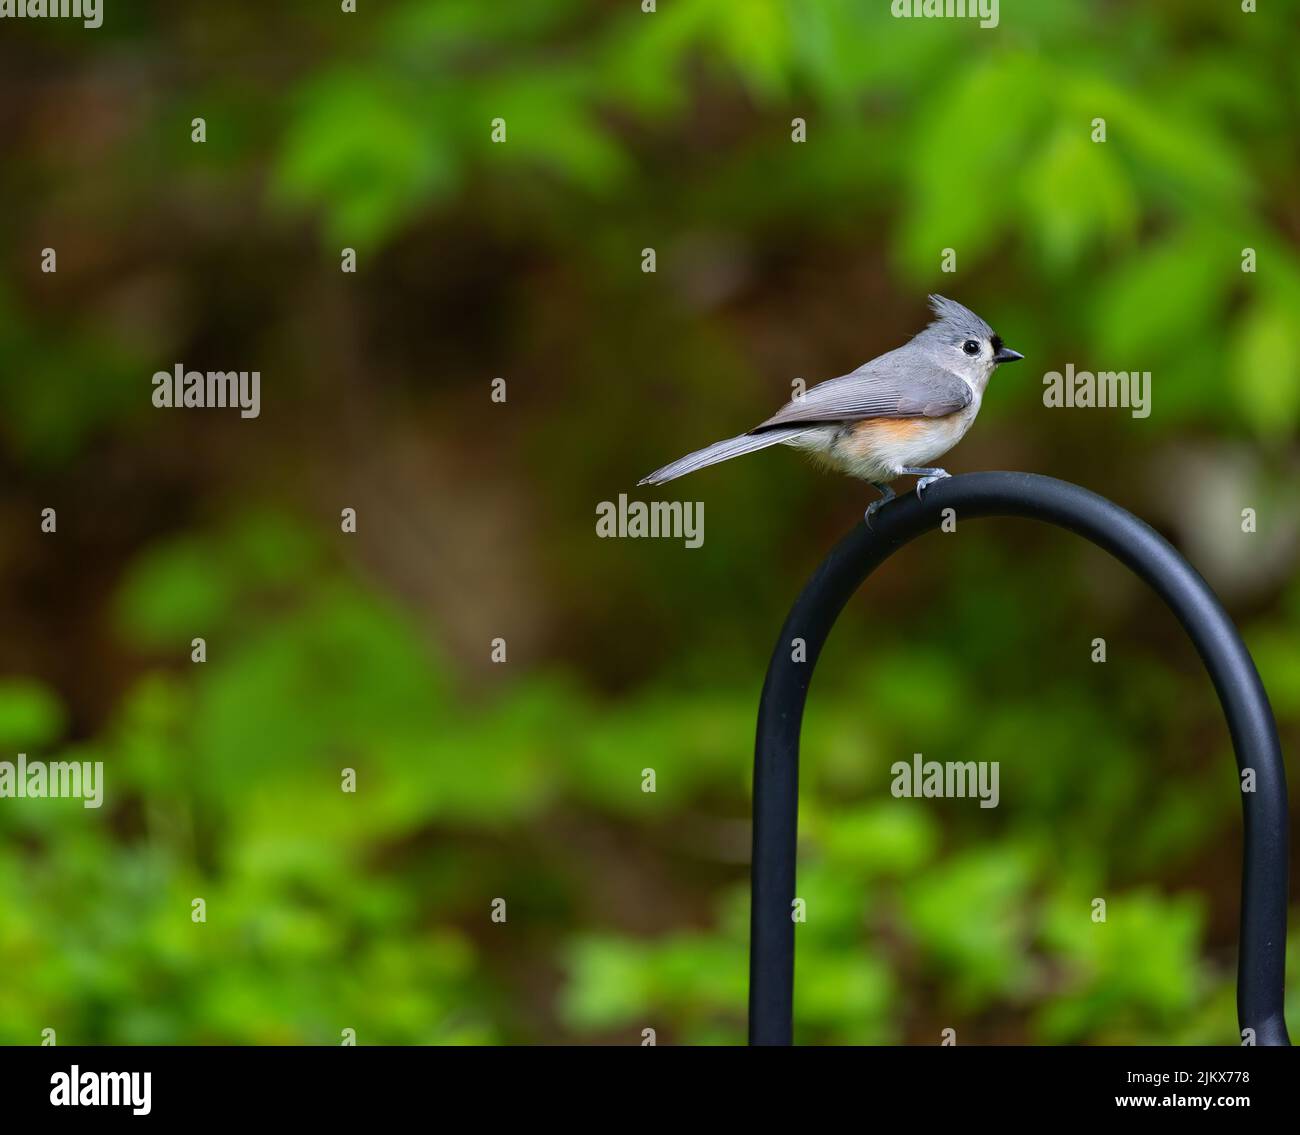 Nahaufnahme eines kleinen Vogels, der auf einem Bischofshaken in einem Garten sitzt. Stockfoto